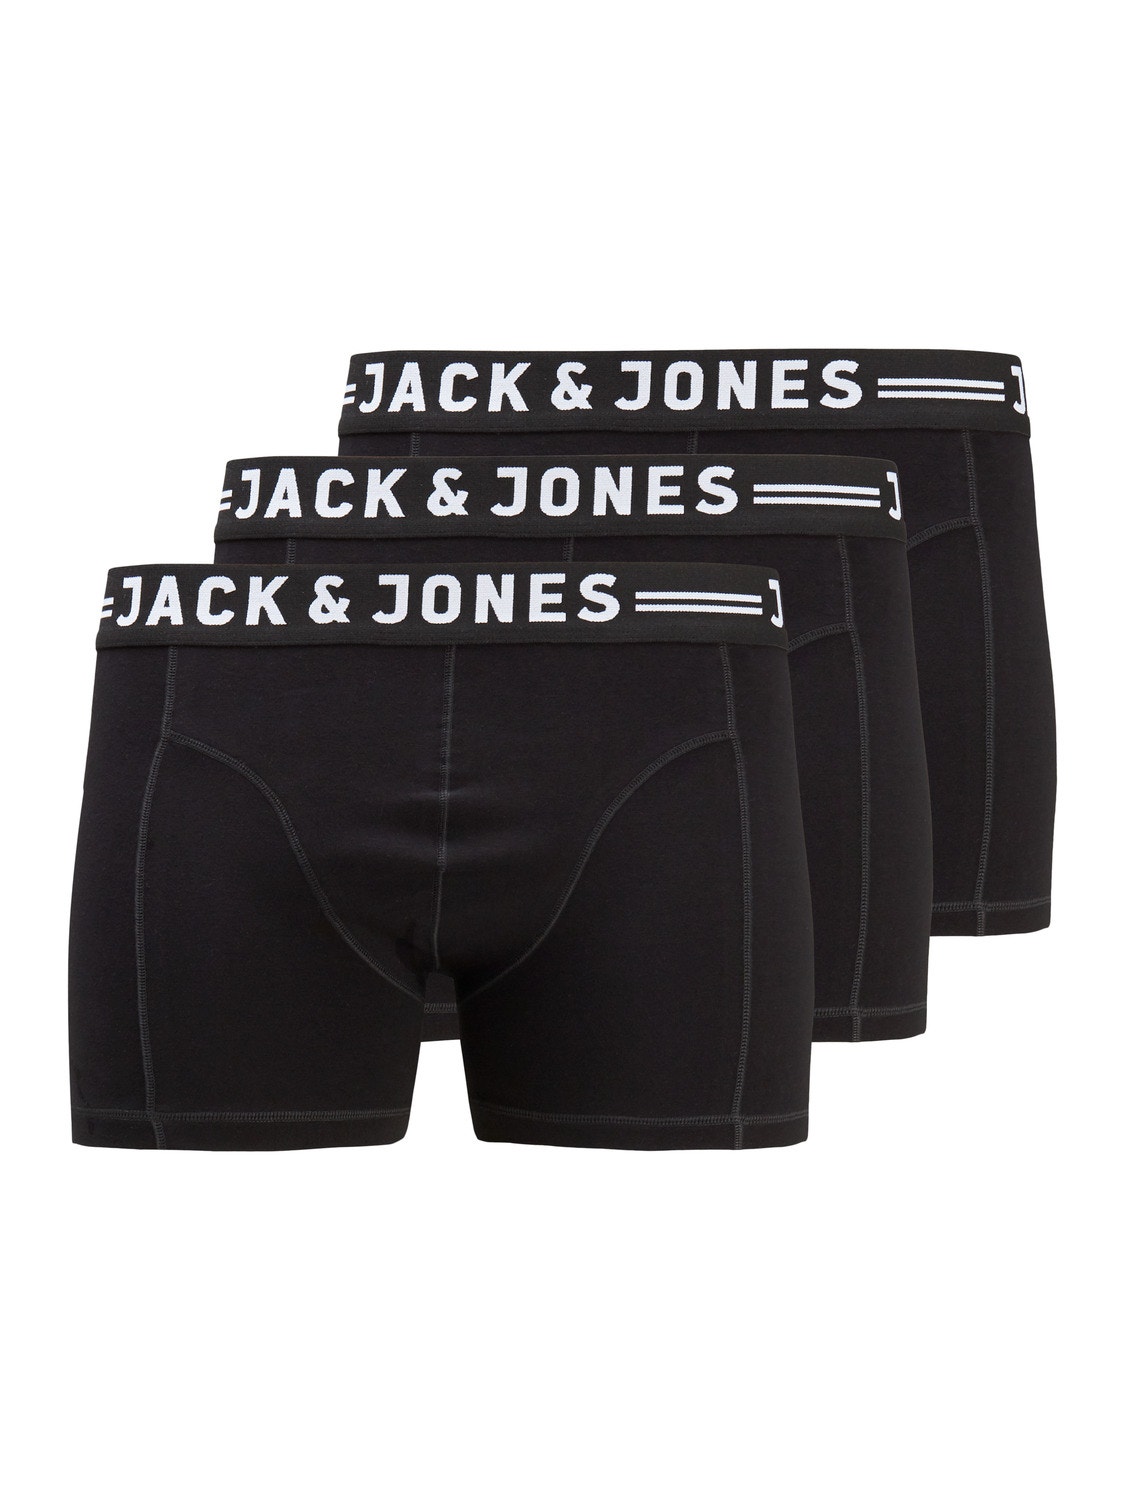 Jack & Jones Plus Size Paquete de 3 Boxers -Black - 12147591